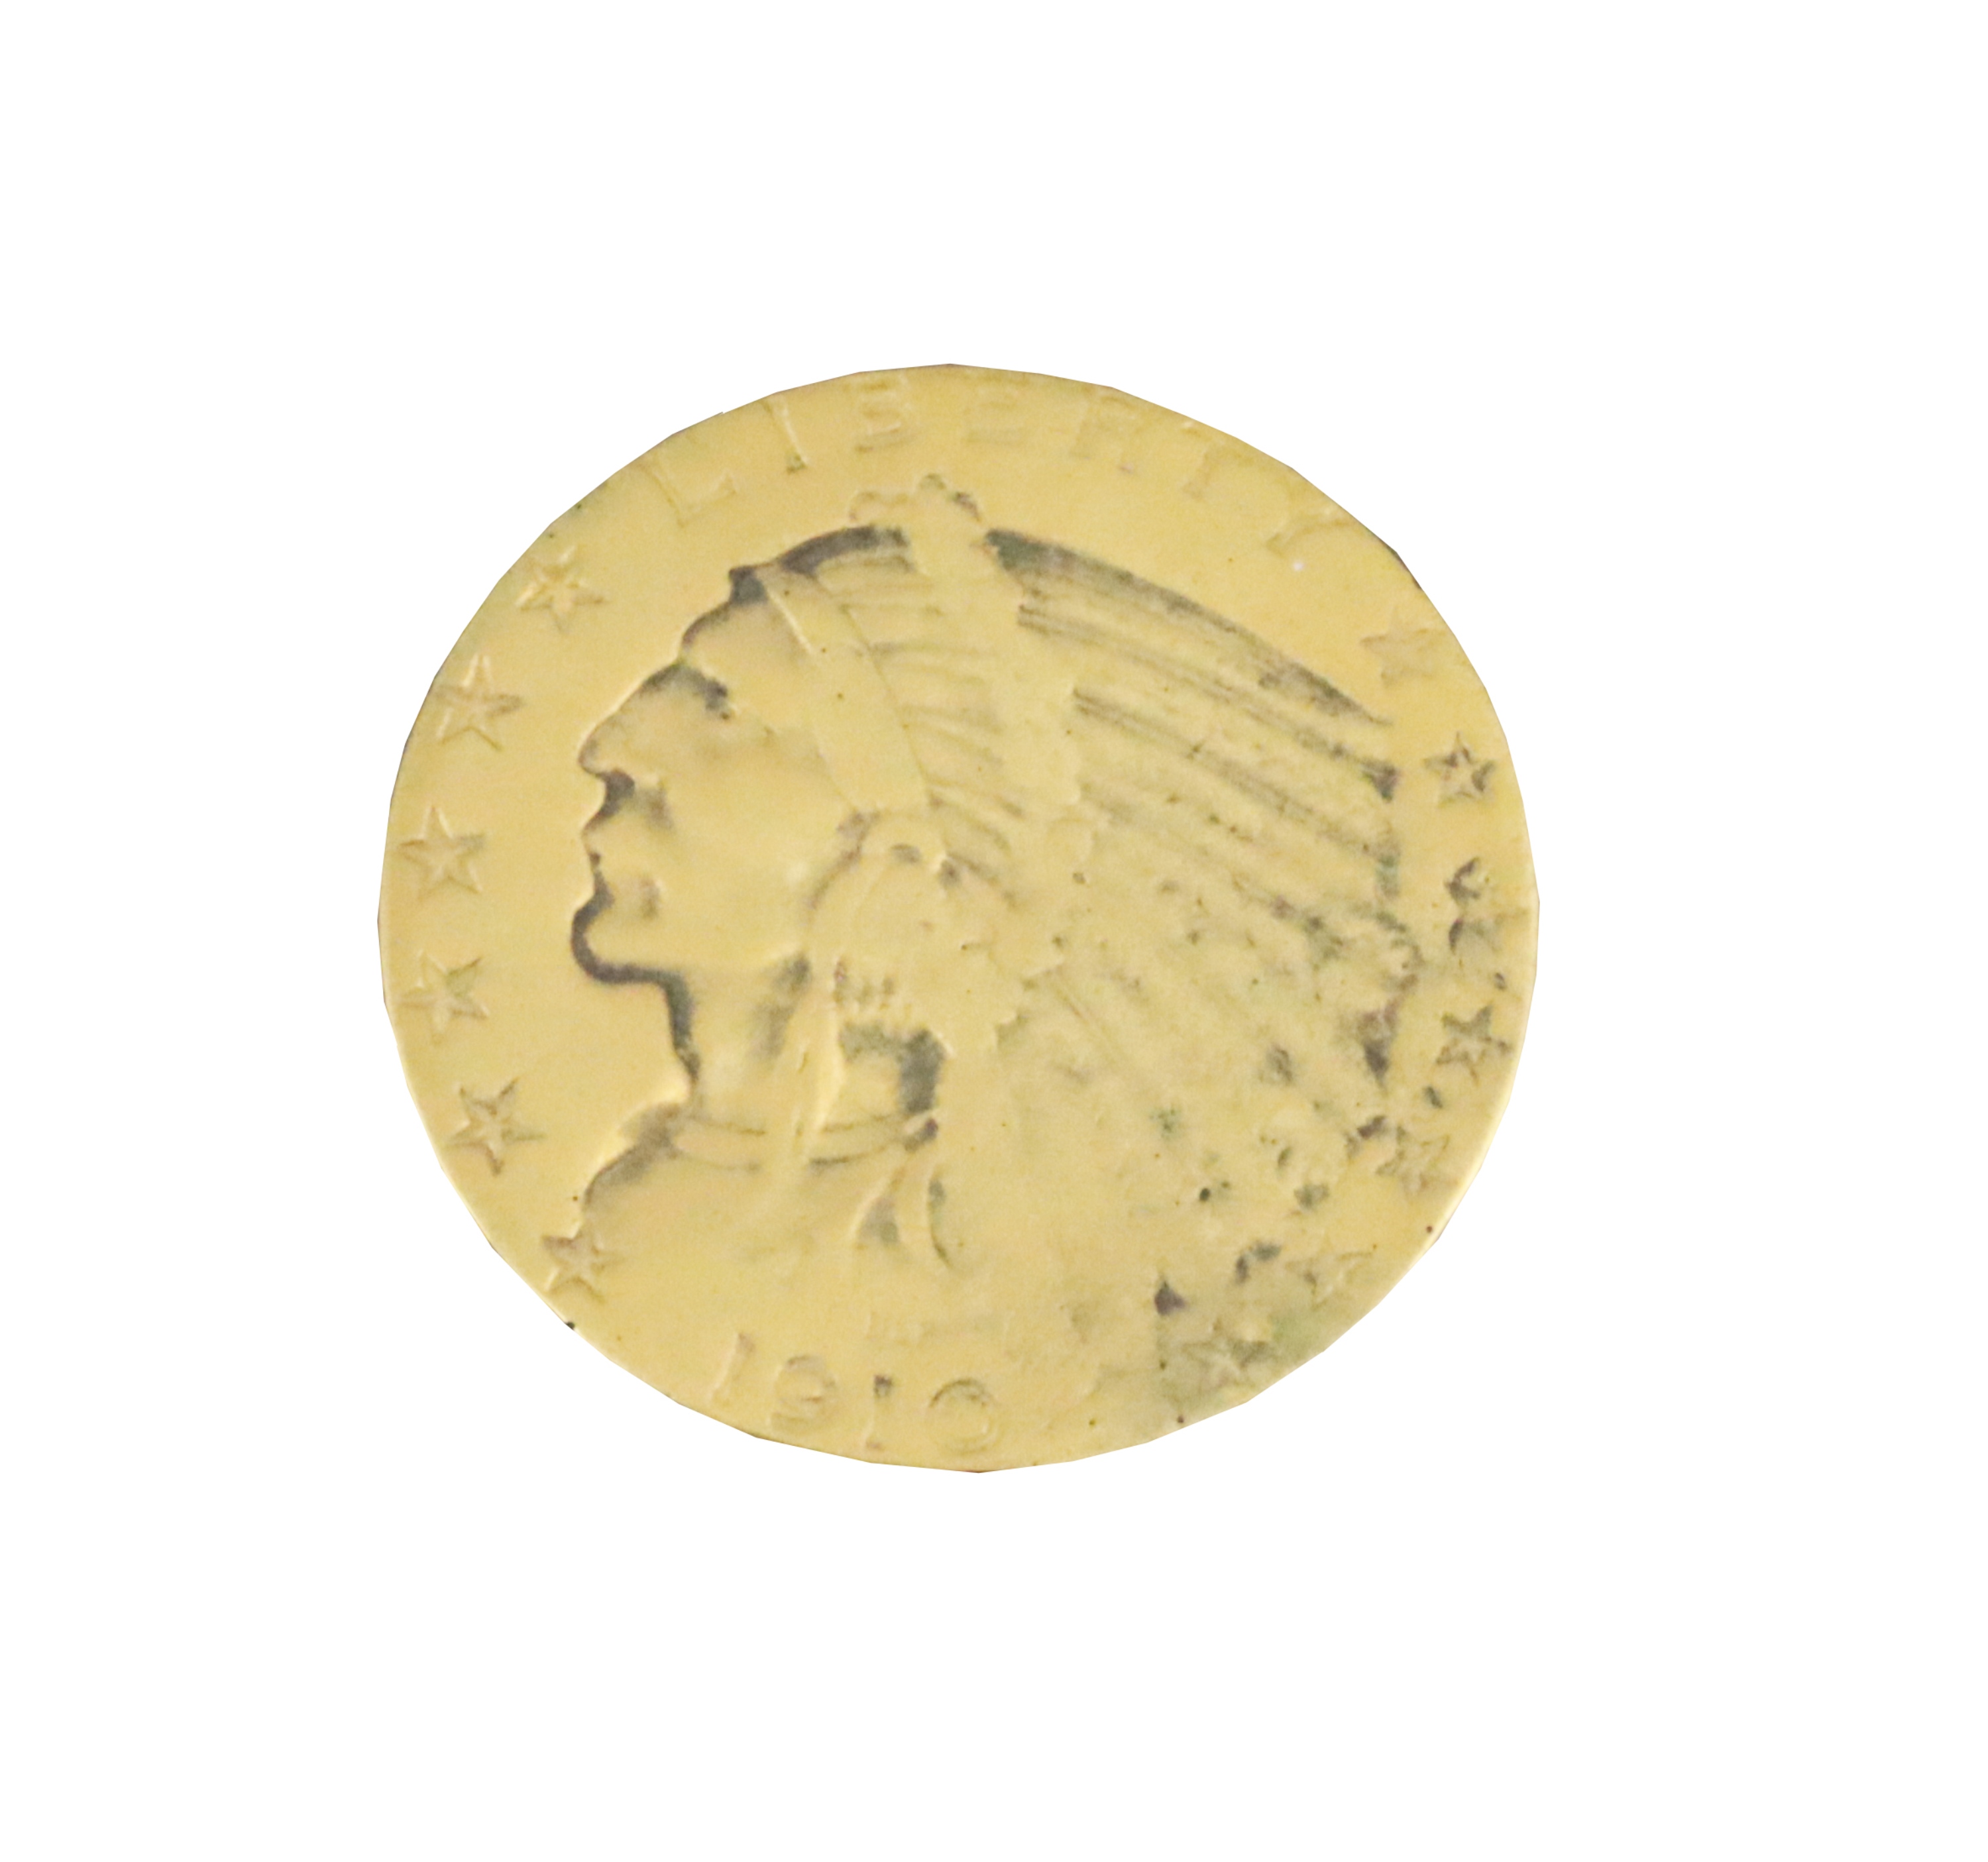 1910 VF20 5 INDIAN HEAD GOLD COIN 3b3b89